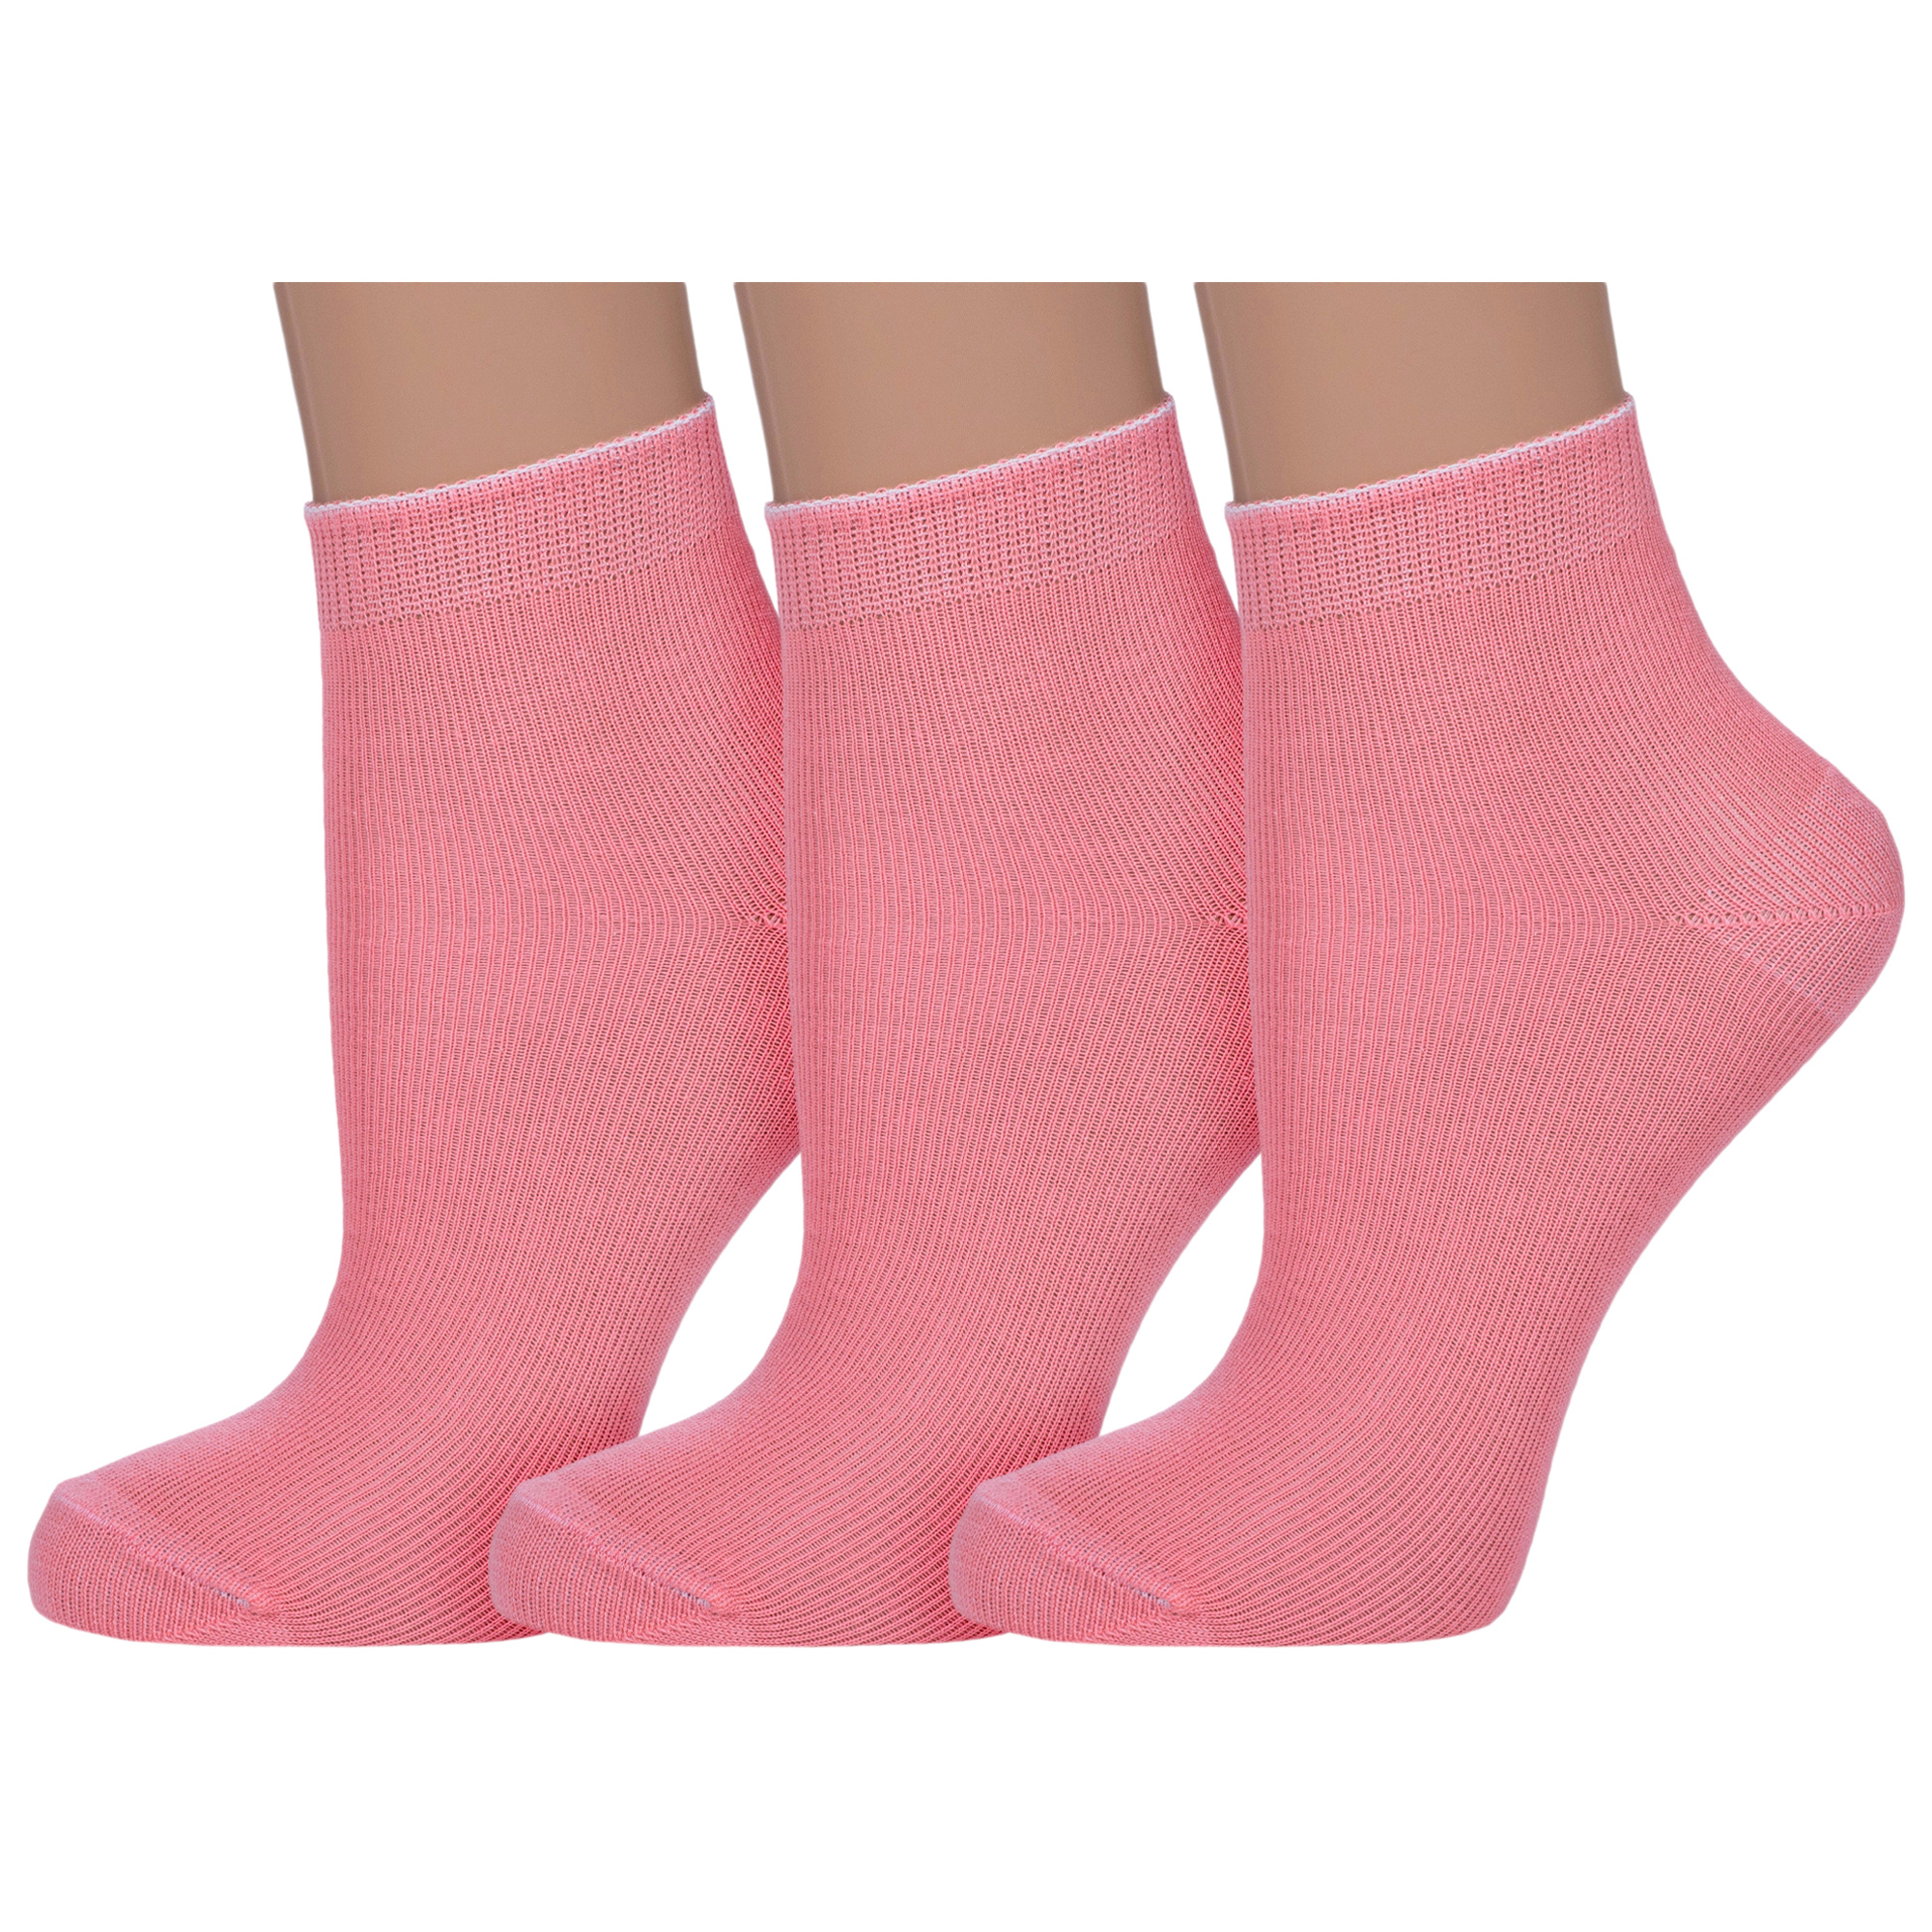 Носки детские НАШЕ 3-С115, розовый, 14-16 носки детские наше 3 с115 голубой серый 10 12